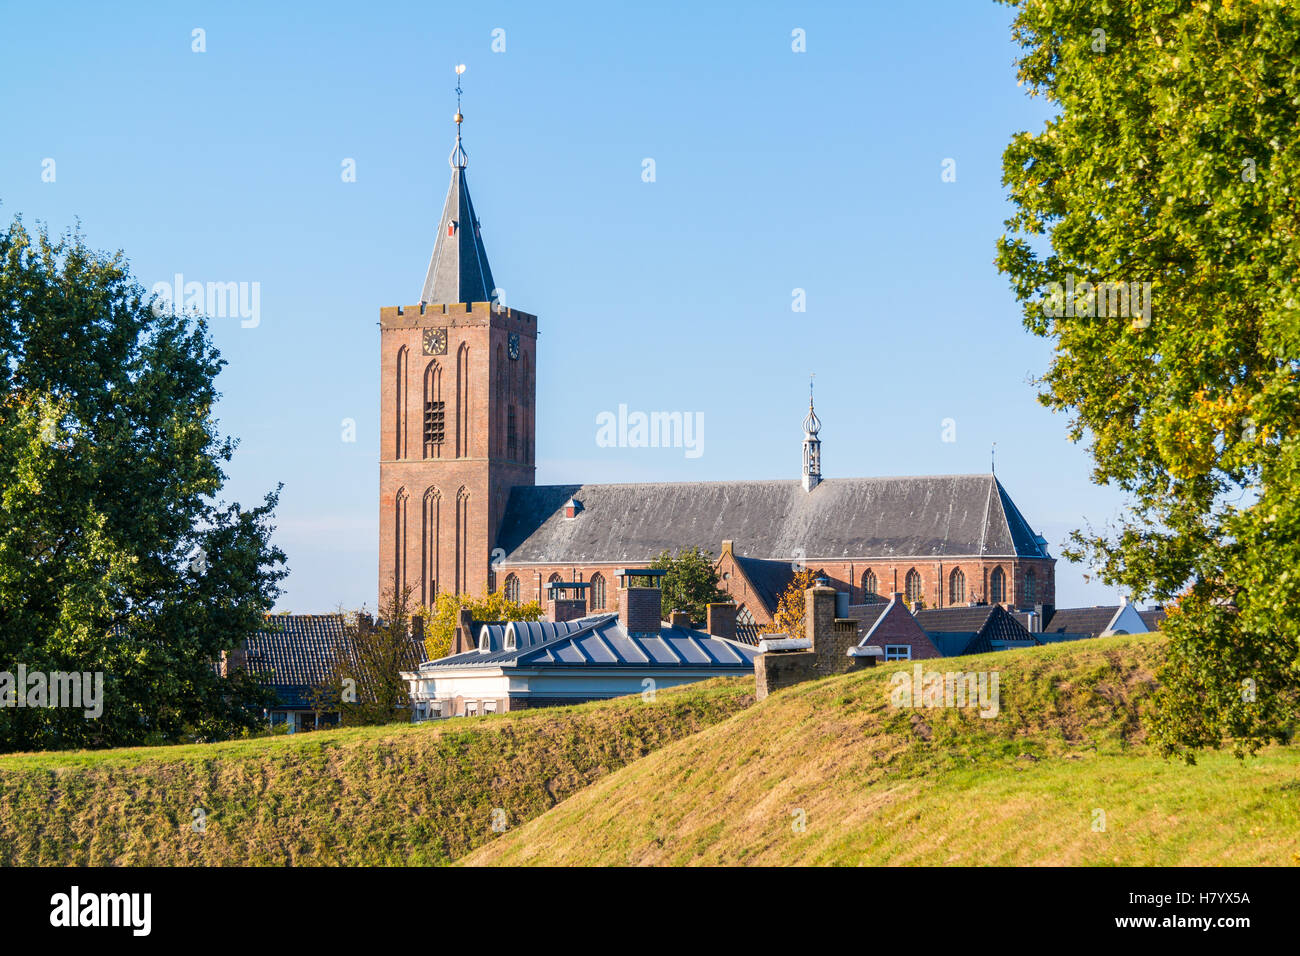 Grande église et rempart dans vieille ville fortifiée de Naarden, Hollande du Nord, Pays-Bas Banque D'Images